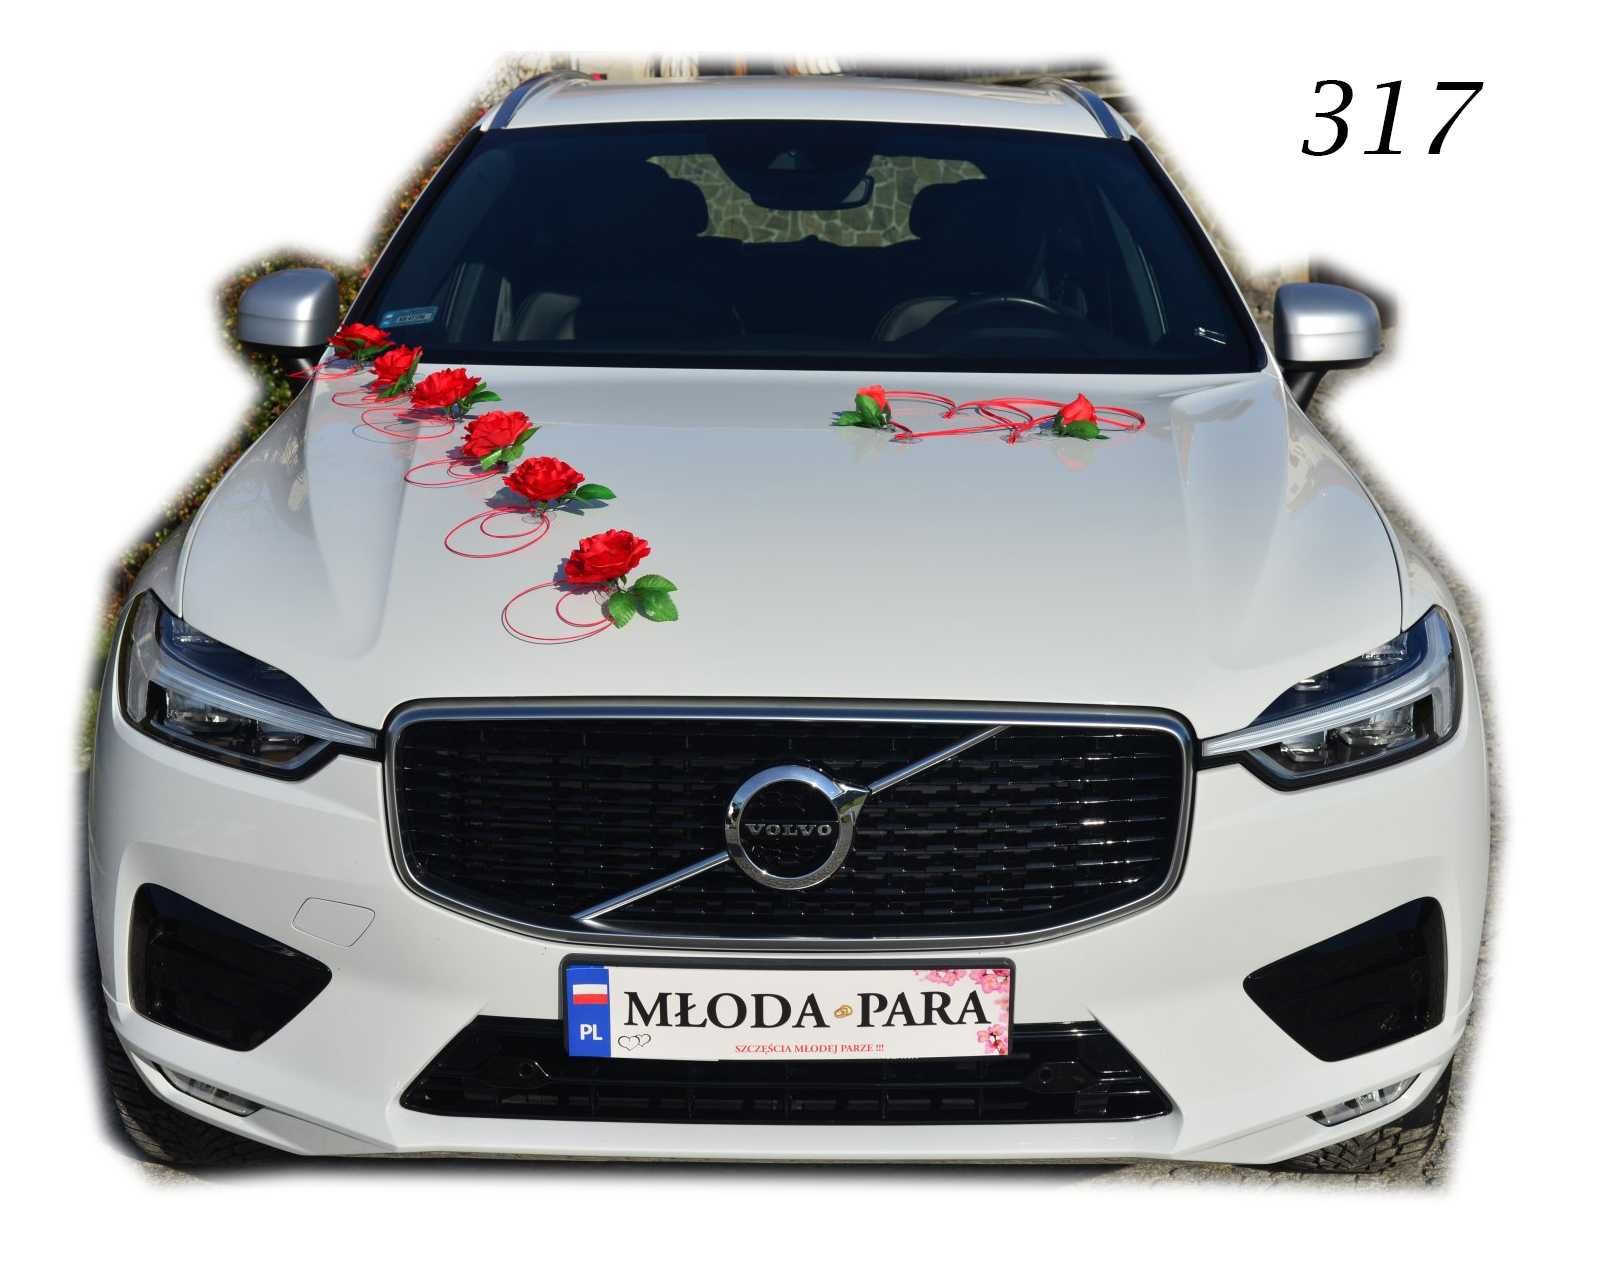 Czerwona dekoracja na biały samochód auto do ślubu Nr 317